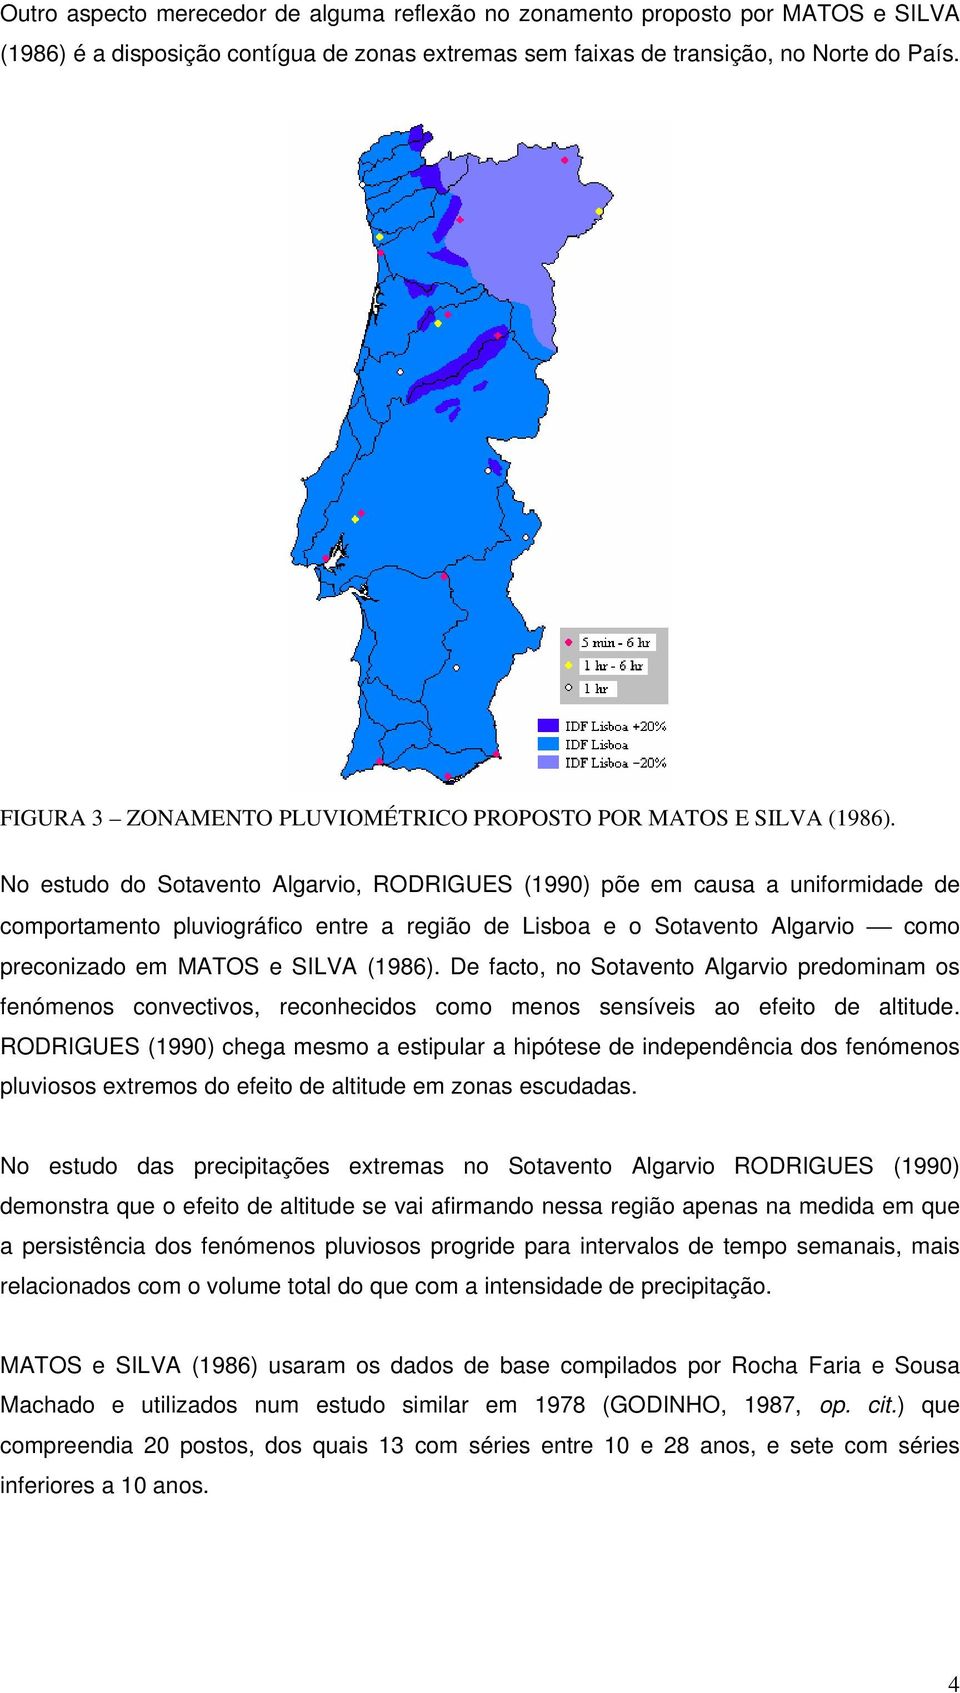 No estudo do Sotavento Algarvio, RODRIGUES (1990) põe em causa a uniformidade de comportamento pluviográfico entre a região de Lisboa e o Sotavento Algarvio como preconizado em MATOS e SILVA (1986).